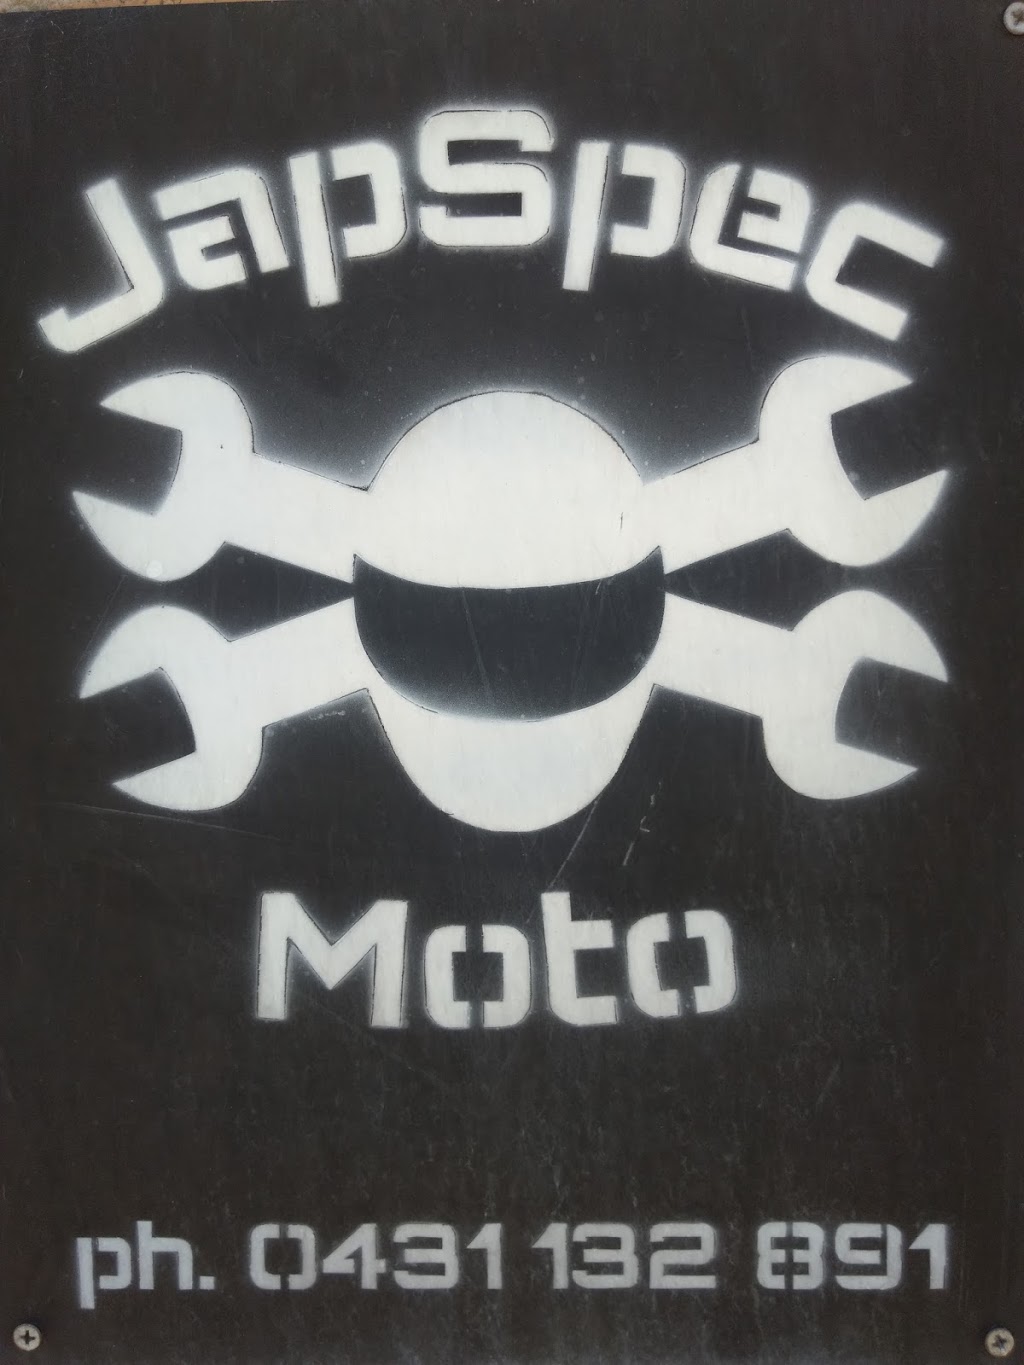 JapSpec Moto | car repair | 63 Fallon St, Brunswick VIC 3056, Australia | 0431132891 OR +61 431 132 891